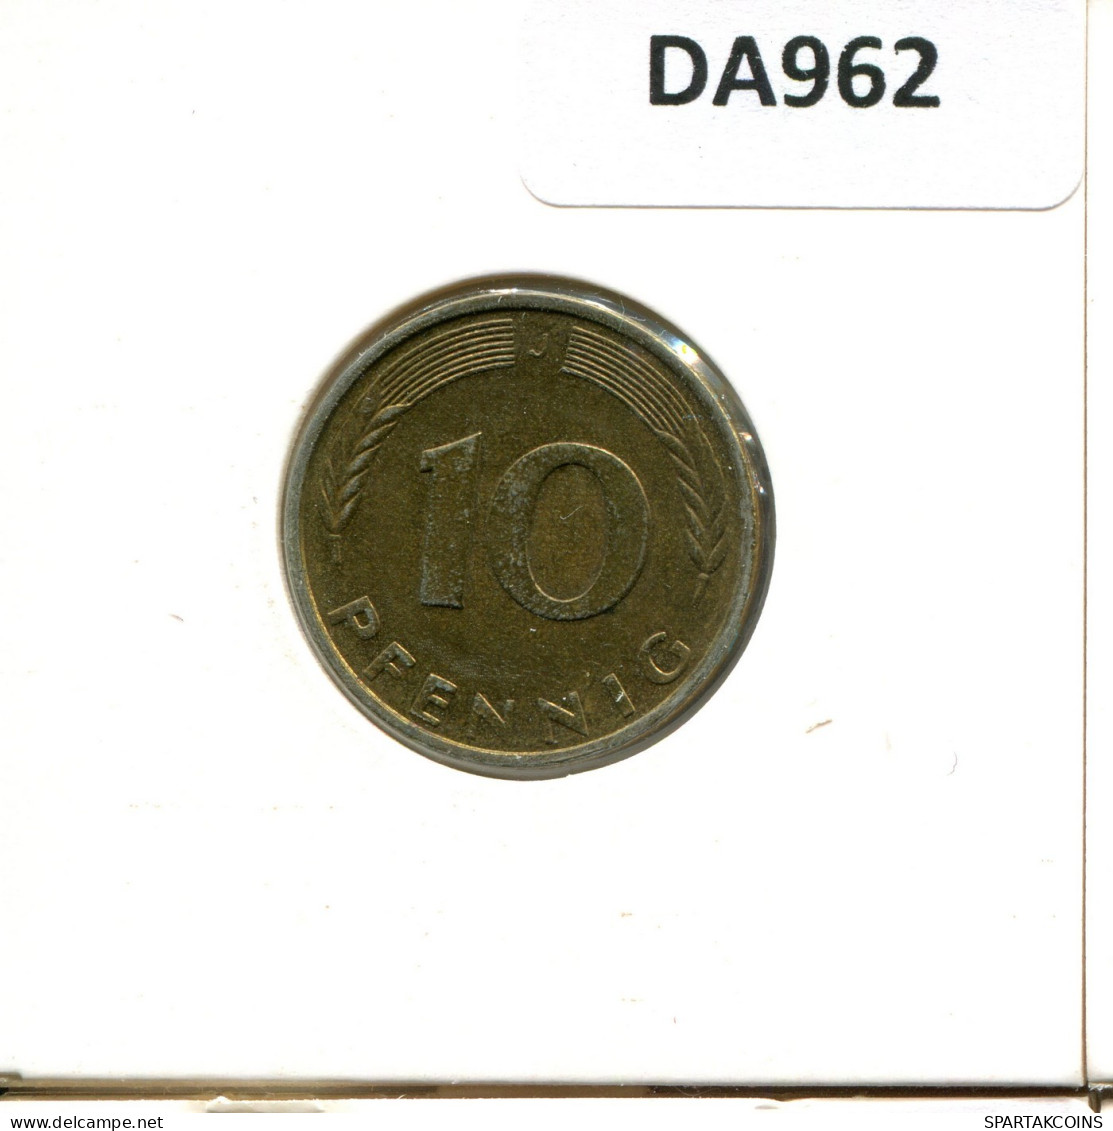 10 PFENNIG 1992 J BRD ALEMANIA Moneda GERMANY #DA962.E.A - 10 Pfennig